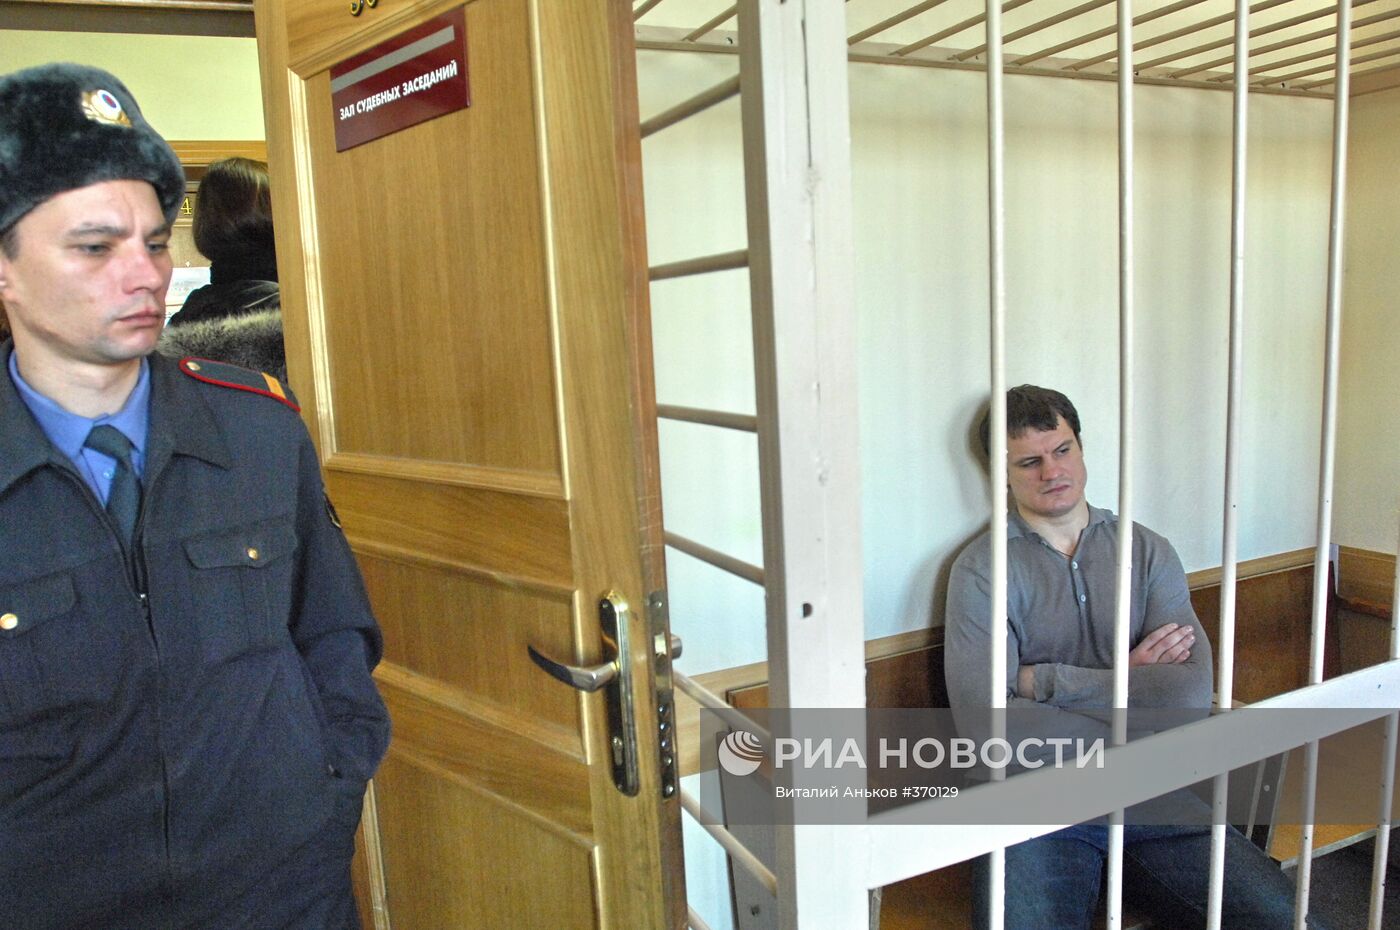 Начался судебный процесс над боксером Романом Романчуком